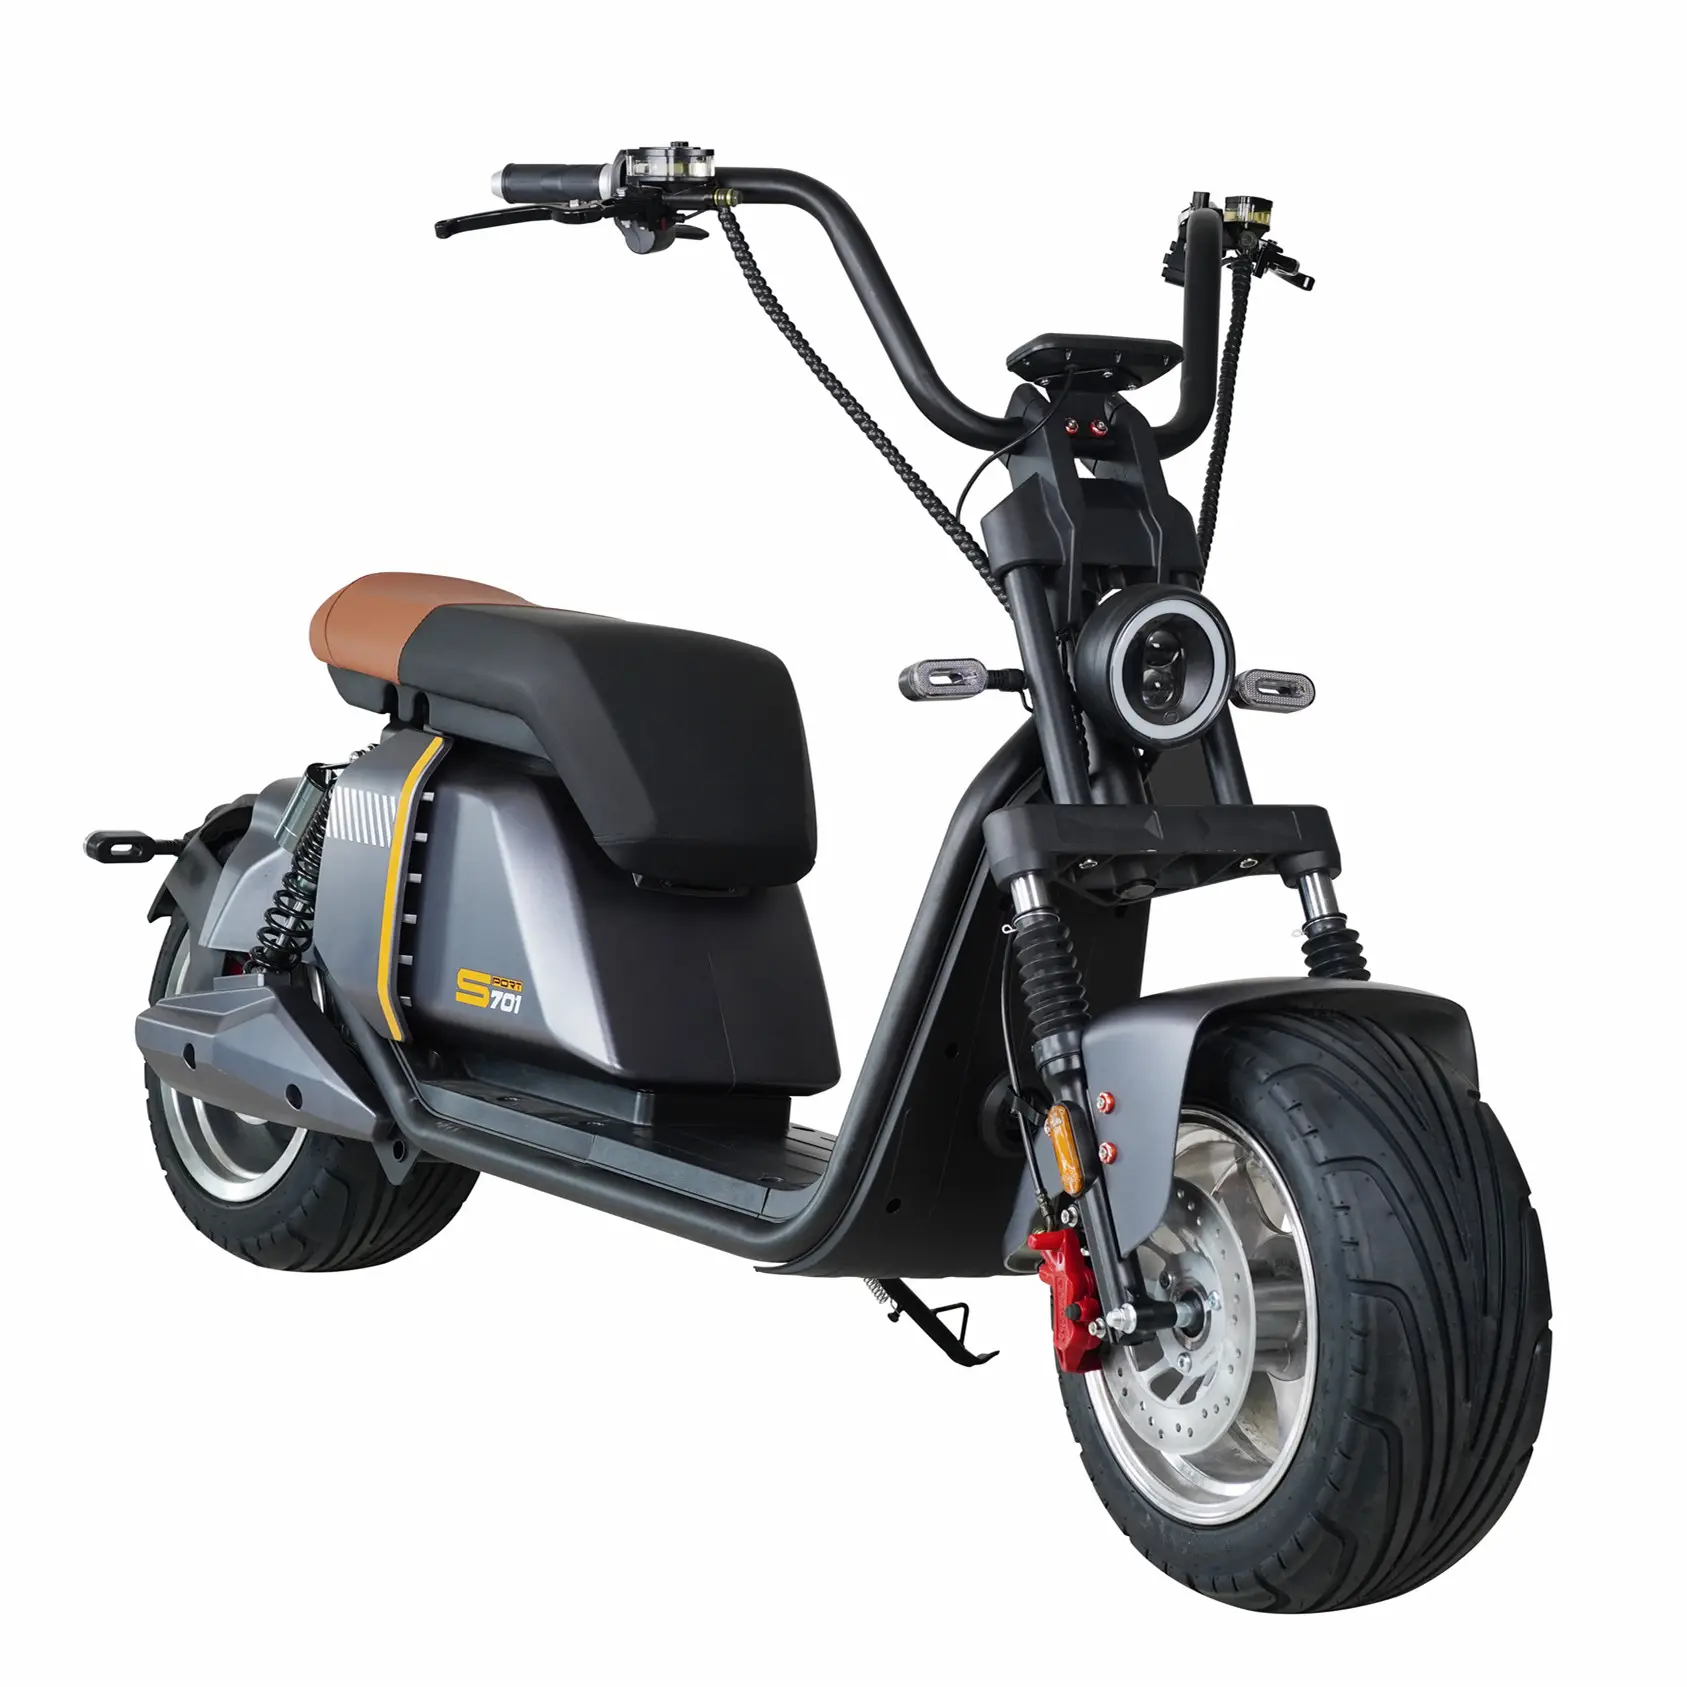 Оптовая цена Gaea 701, низкая цена, Электрический скутер Citycoco для взрослых с толстыми шинами и удобными сидениями